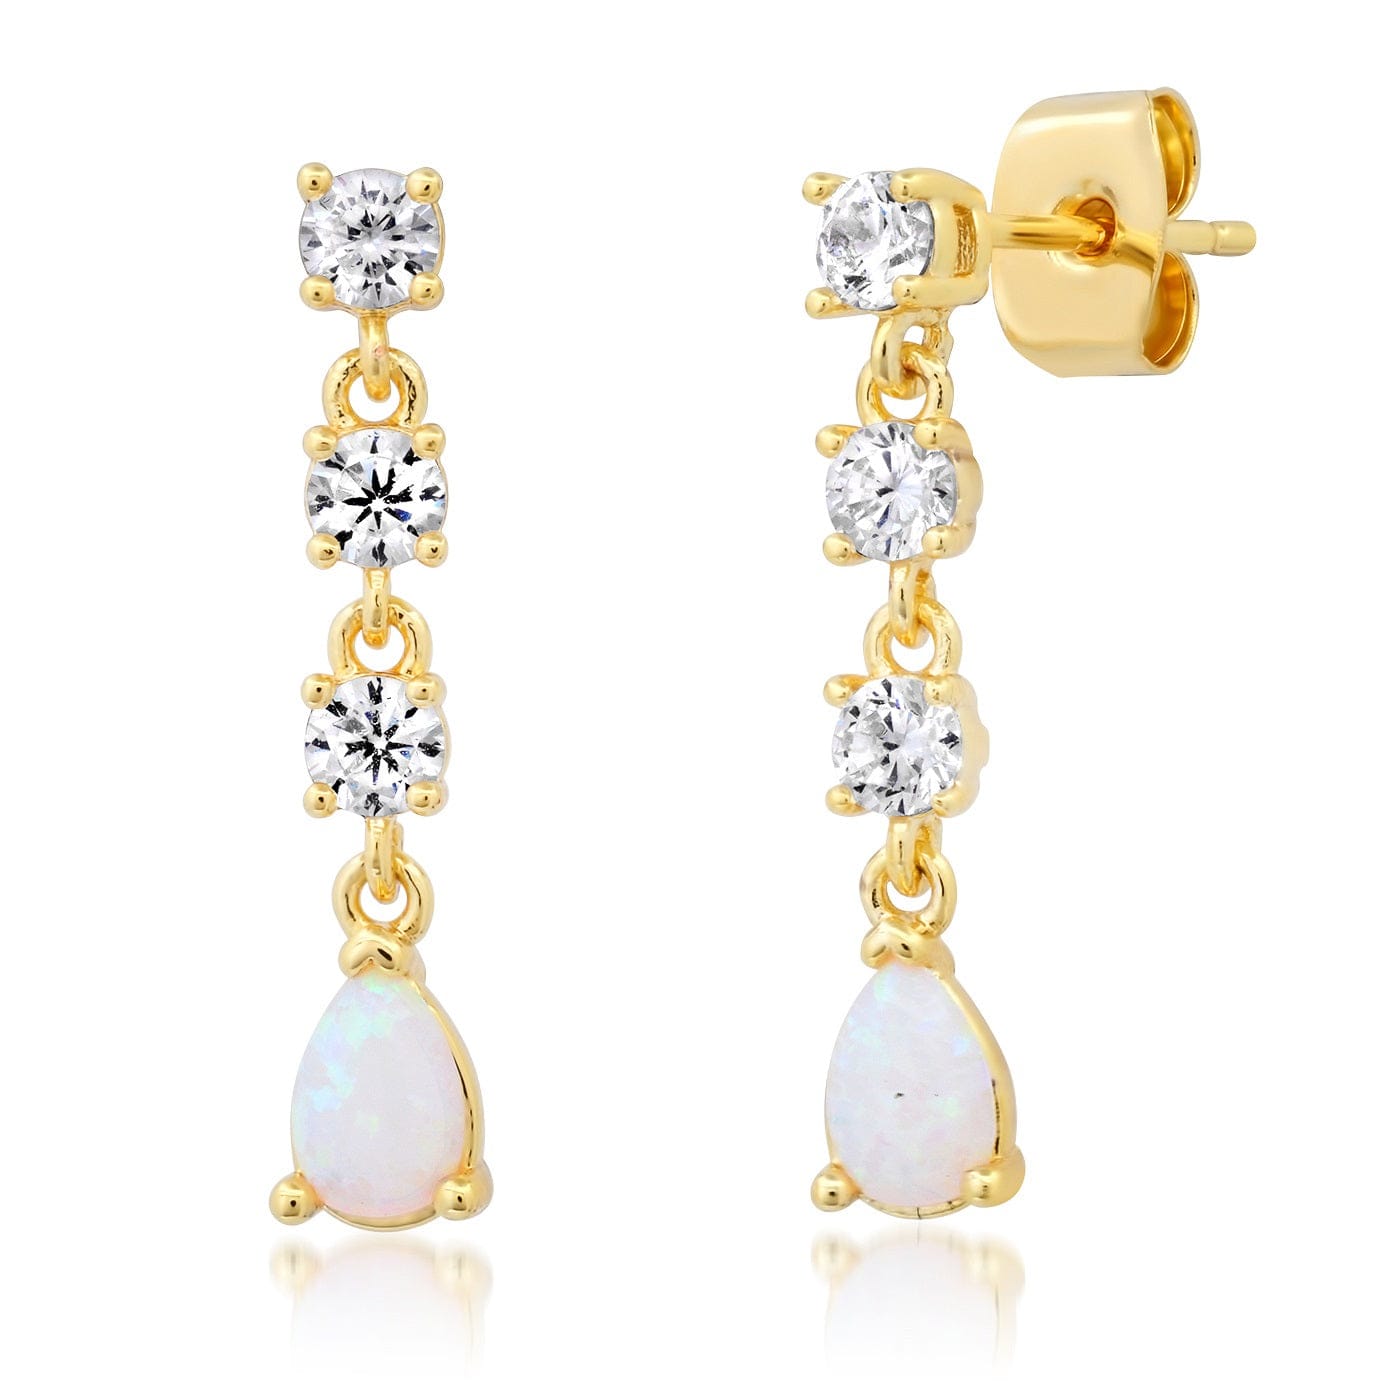 TAI JEWELRY Earrings CZ and Opal Drop Earrings